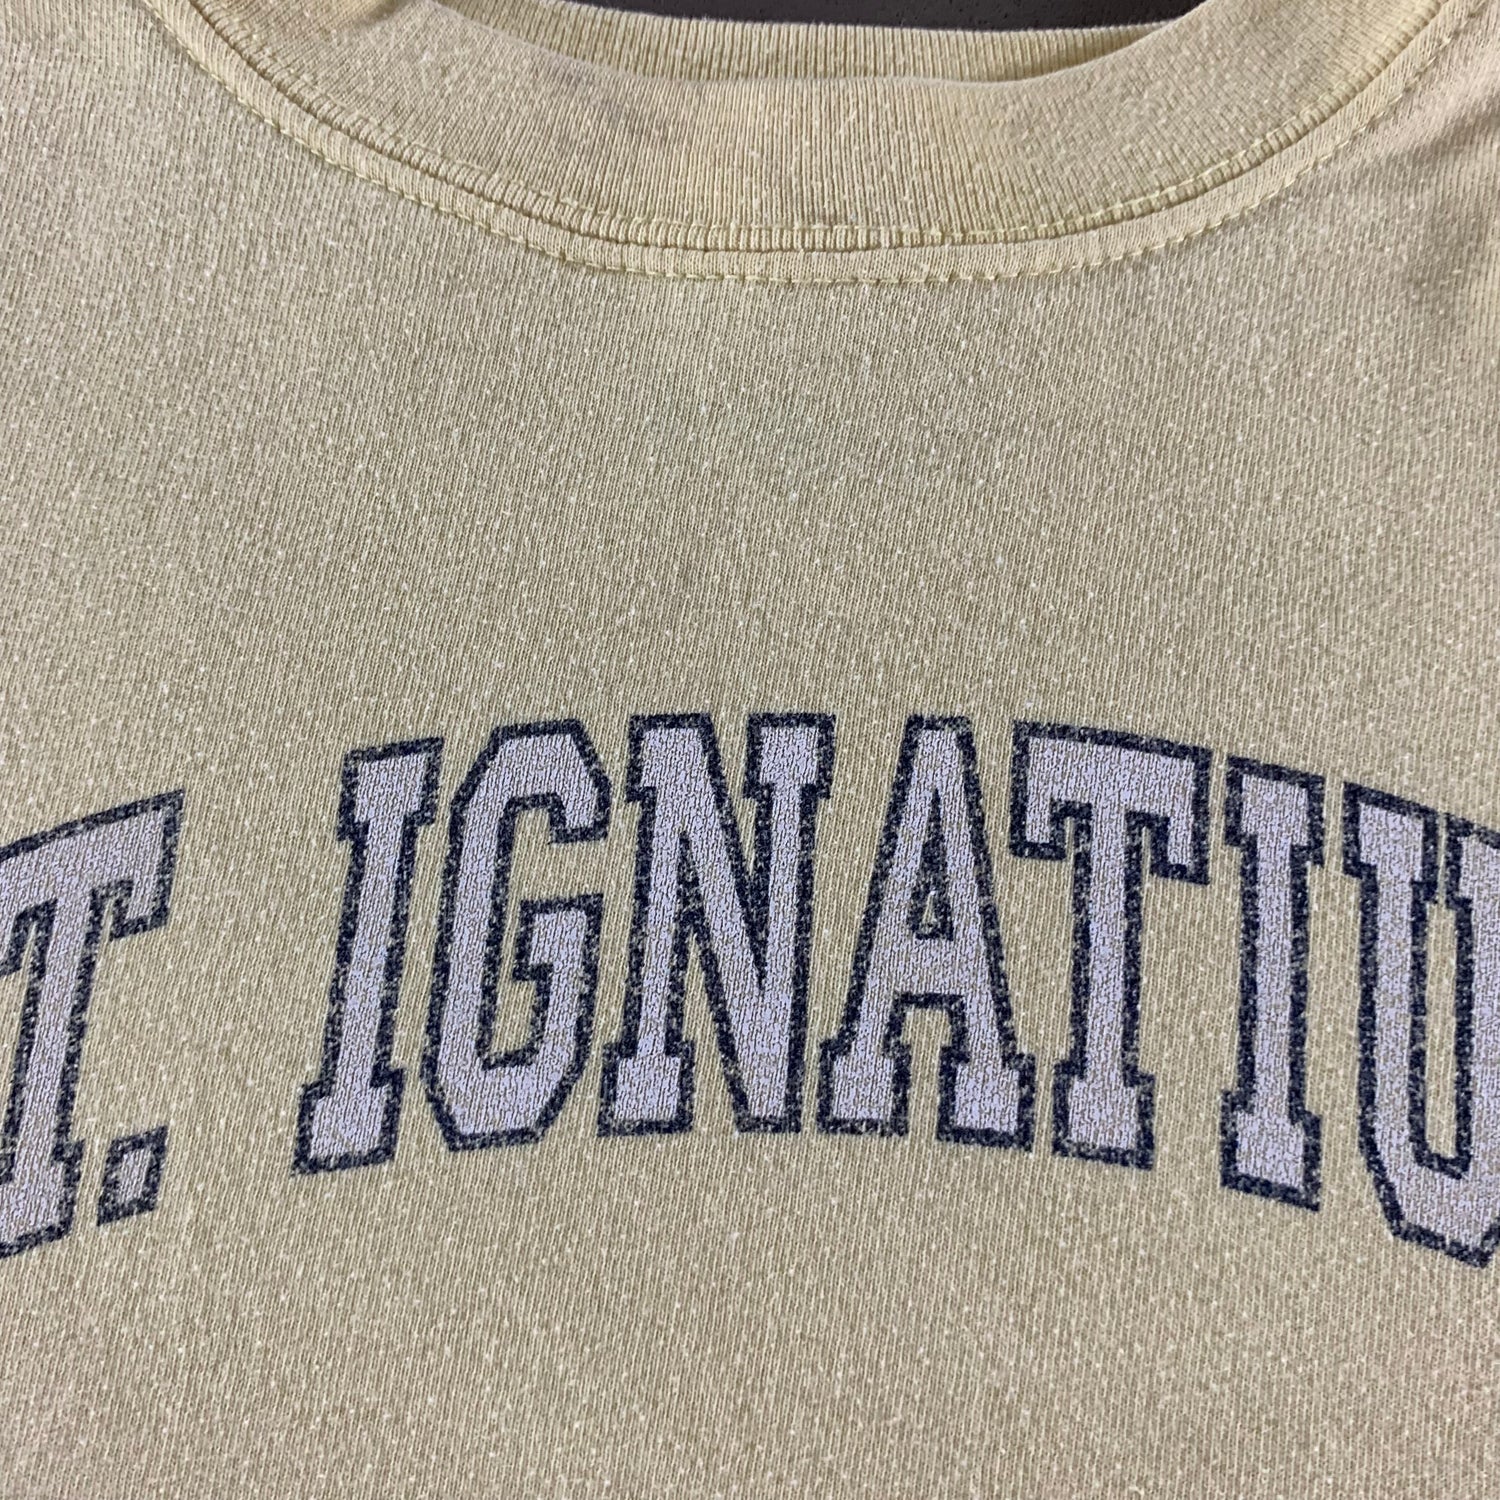 Vintage 1990s St. Ignatius Sweatshirt size Medium